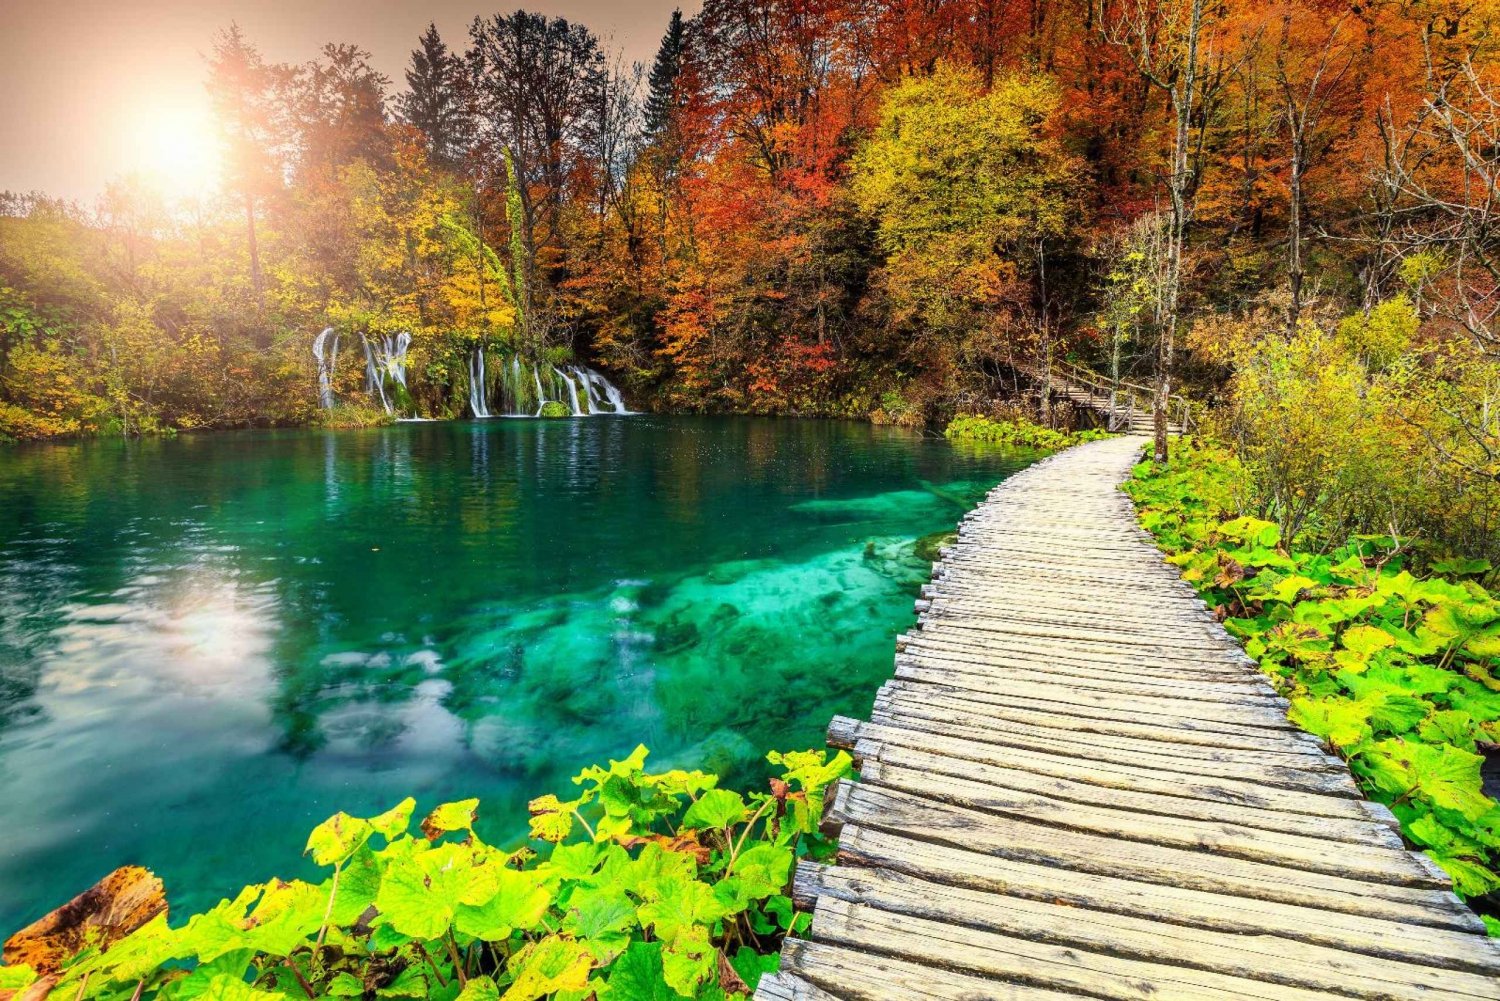 Plitvicen järvien kansallispuisto: Omišista päiväretki